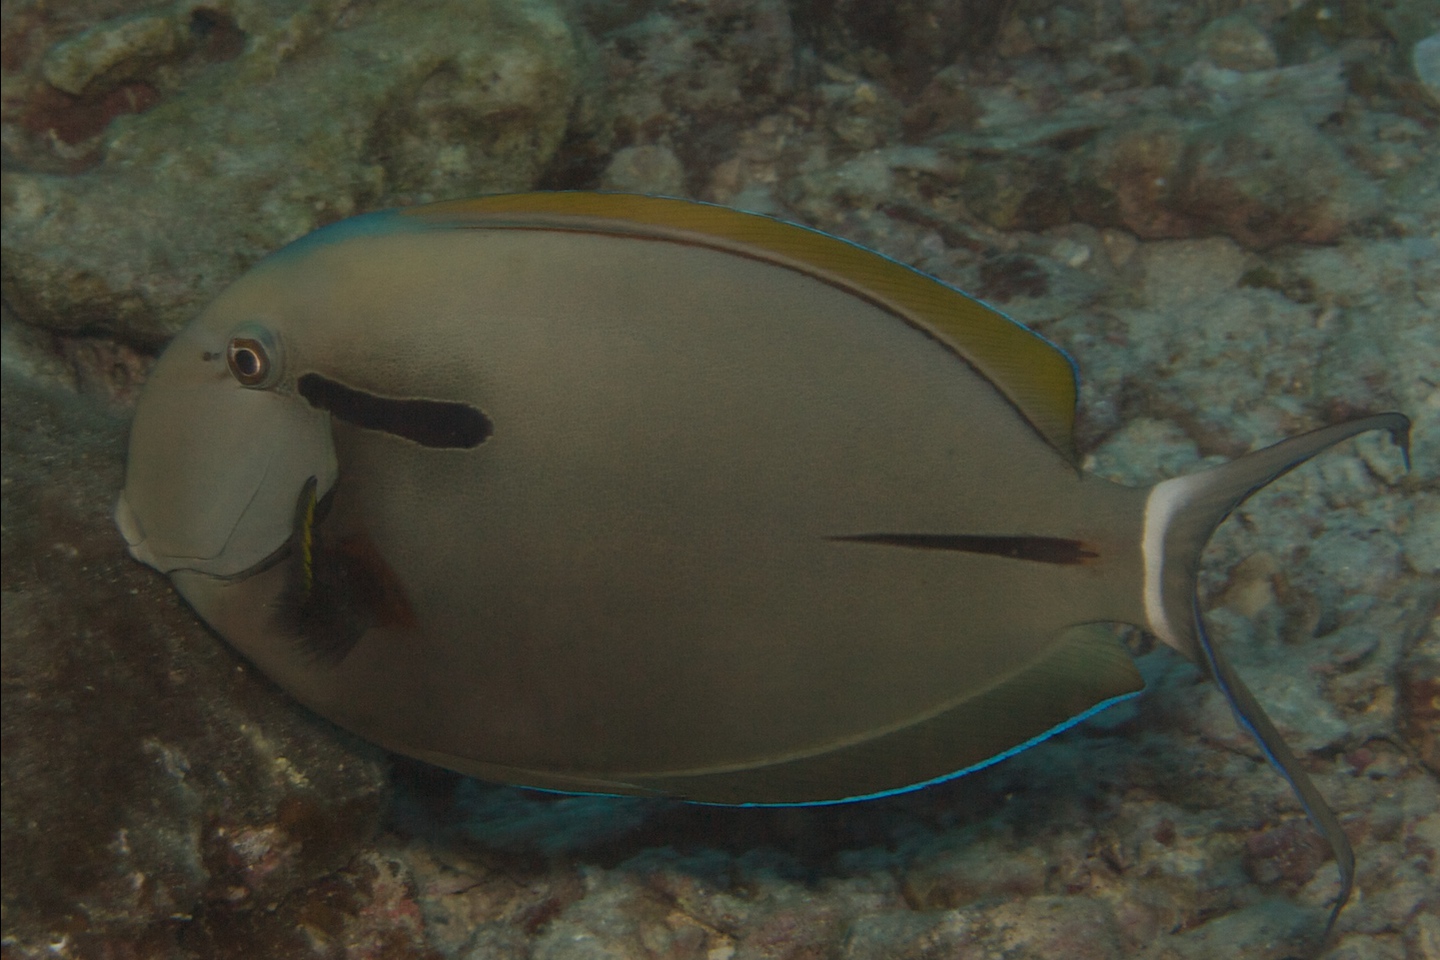 Epaulette surgeonfish